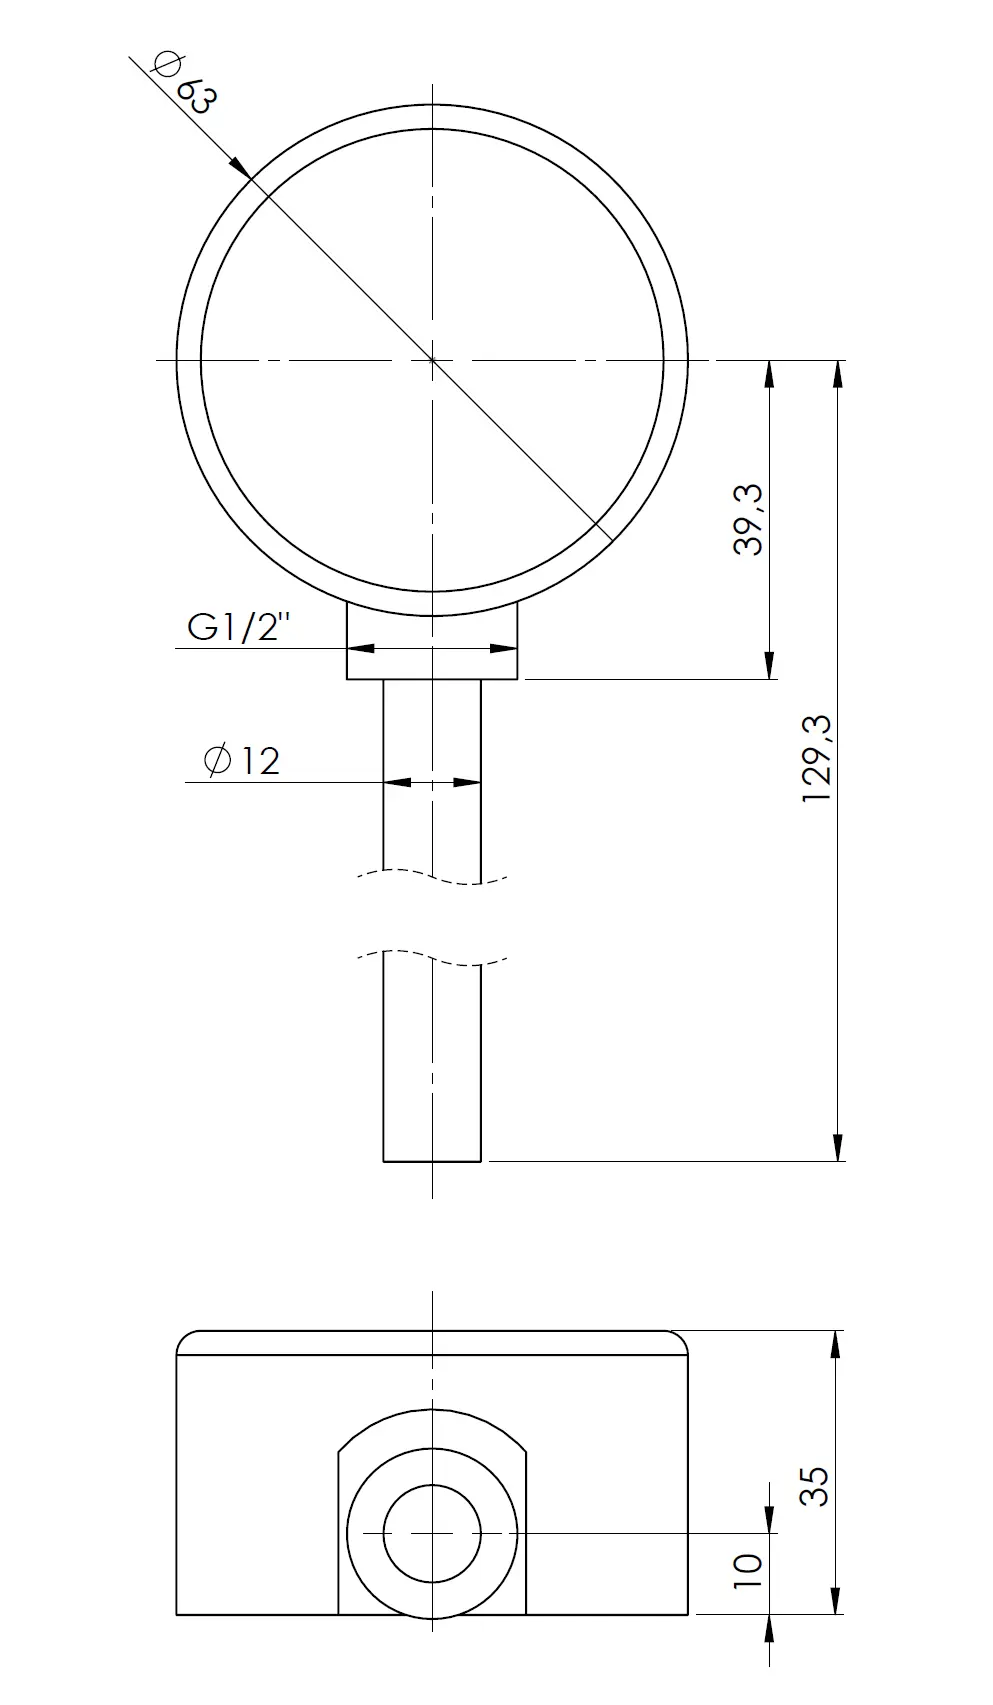 Termometr bimetaliczny BiTh 63, fi63 mm, 0÷120°C, L 100 mm, G1/2", rad, kl. 2 - budowa